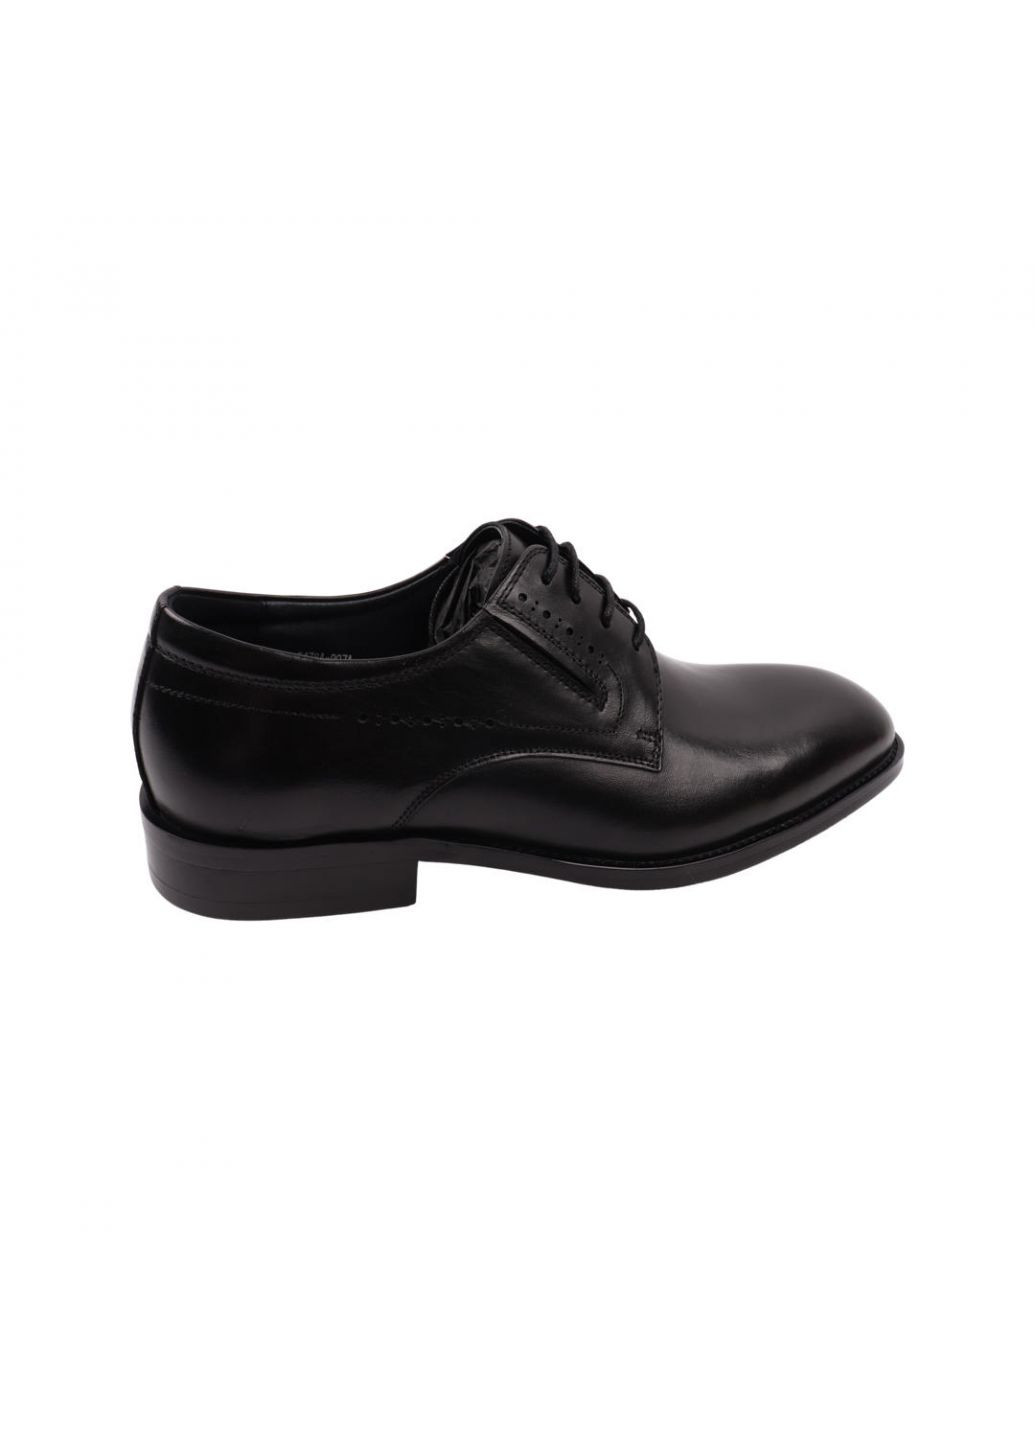 Туфлі чоловічі Lido Marinozi чорні натуральна шкіра Lido Marinozzi 260-22dt (257439641)